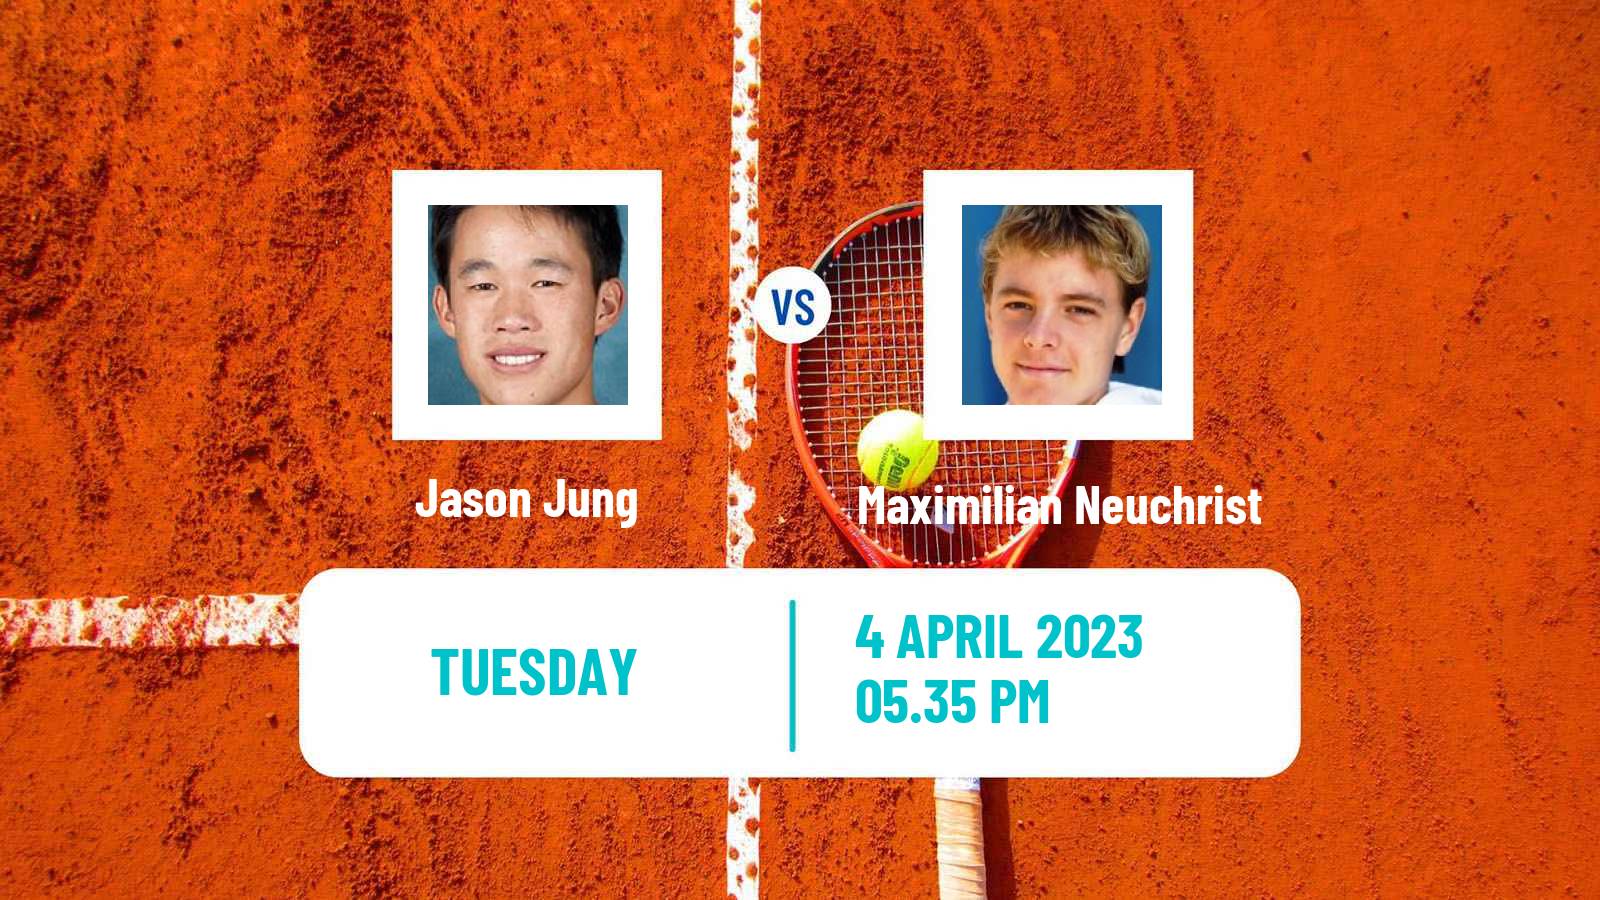 Tennis ATP Challenger Jason Jung - Maximilian Neuchrist